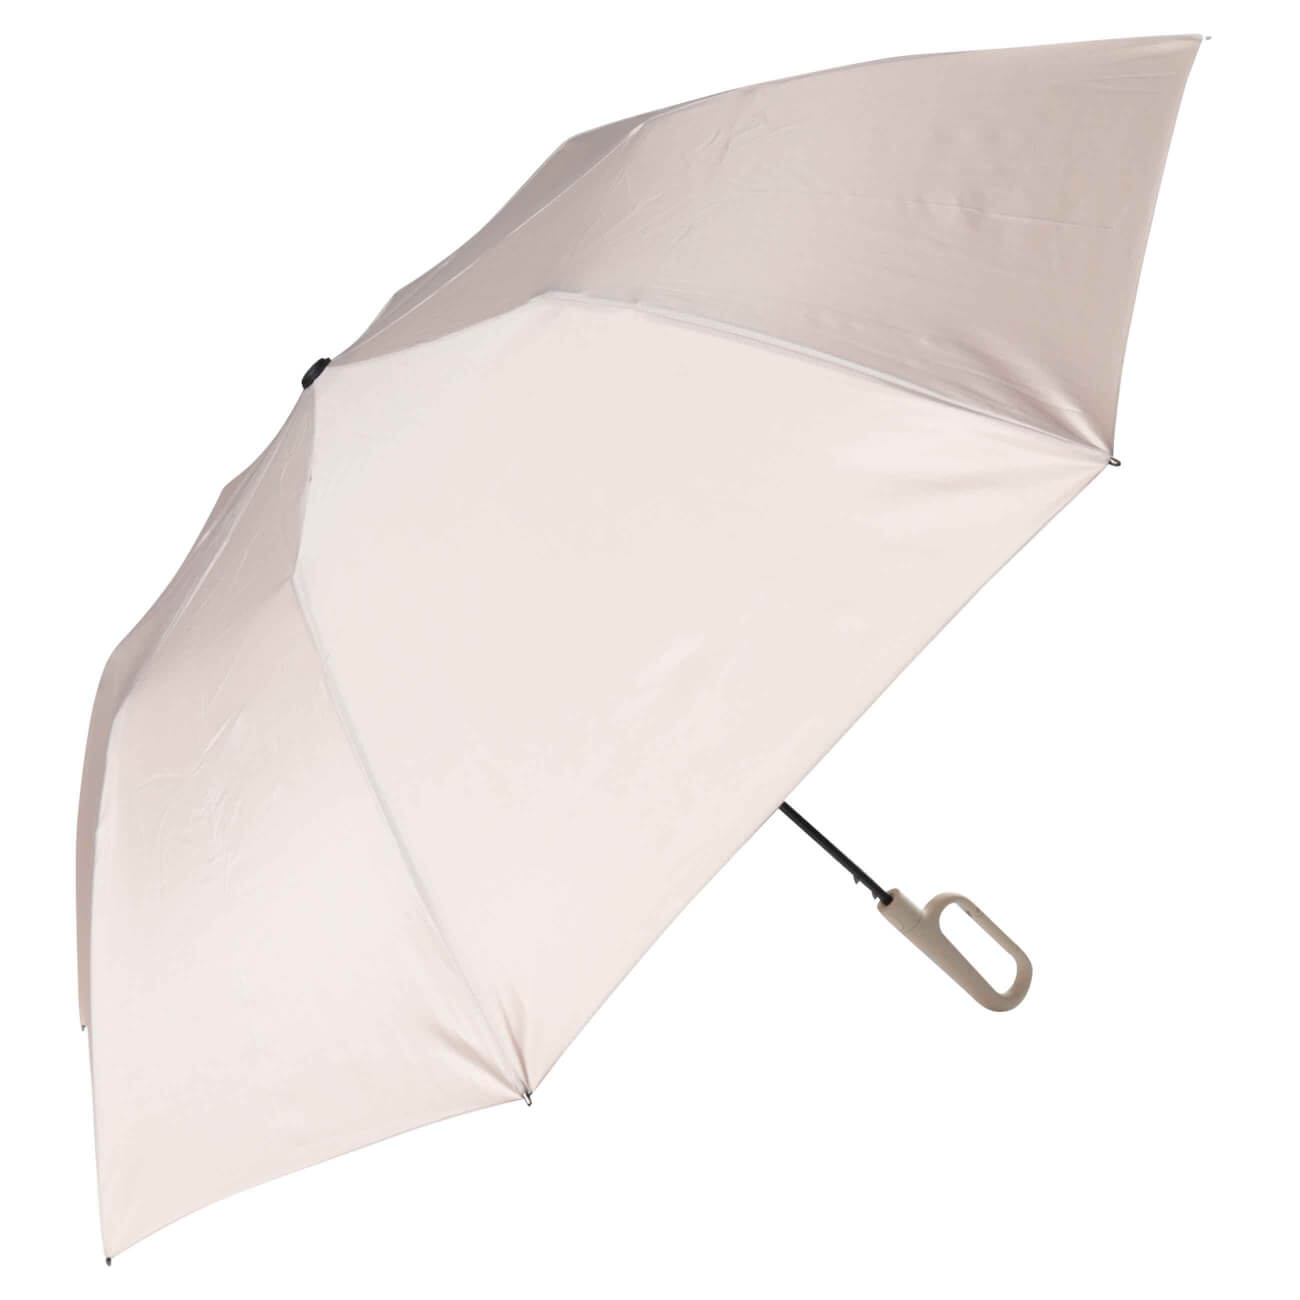 Зонт, 70 см, складной, полу-автоматический, с ручкой-карабином, эпонж, бежевый, Rainfall ветрозащитный светодиодный зонт от солнца и дождя легкий компактный складной обратный автоматический сильный зонт